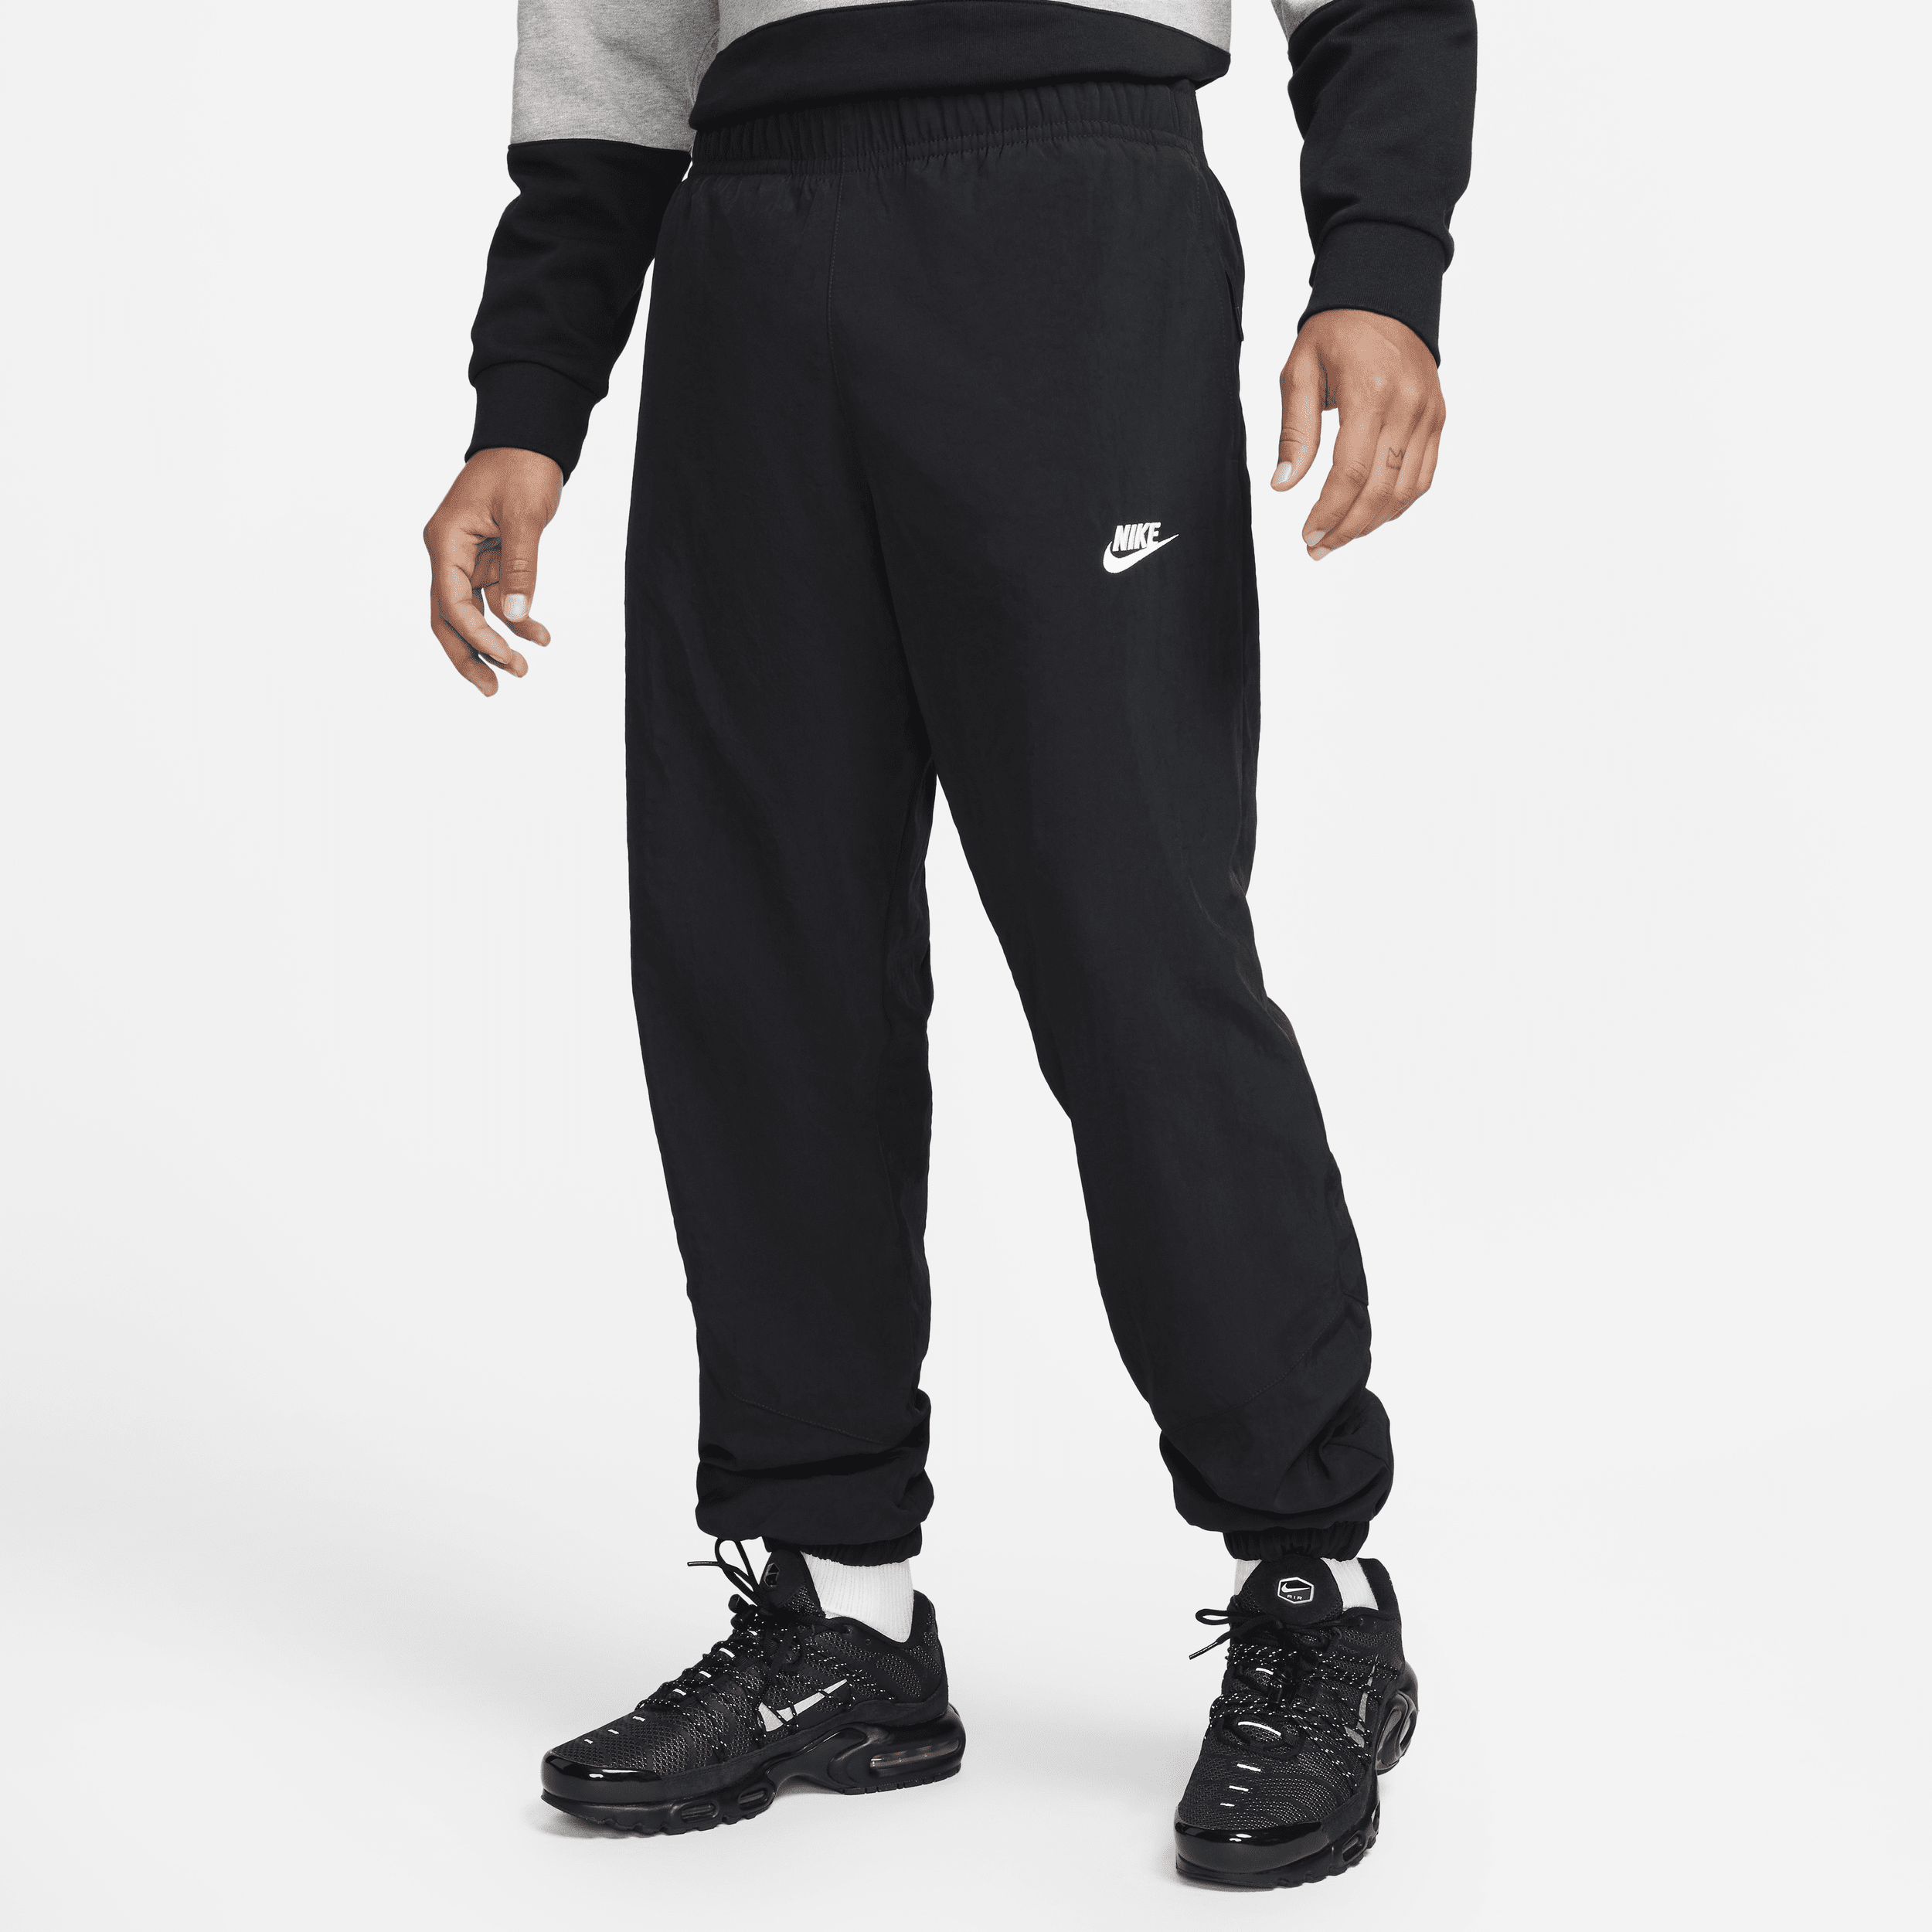 Nike Windrunner Pantalón de tejido Woven para el invierno - Hombre - Negro